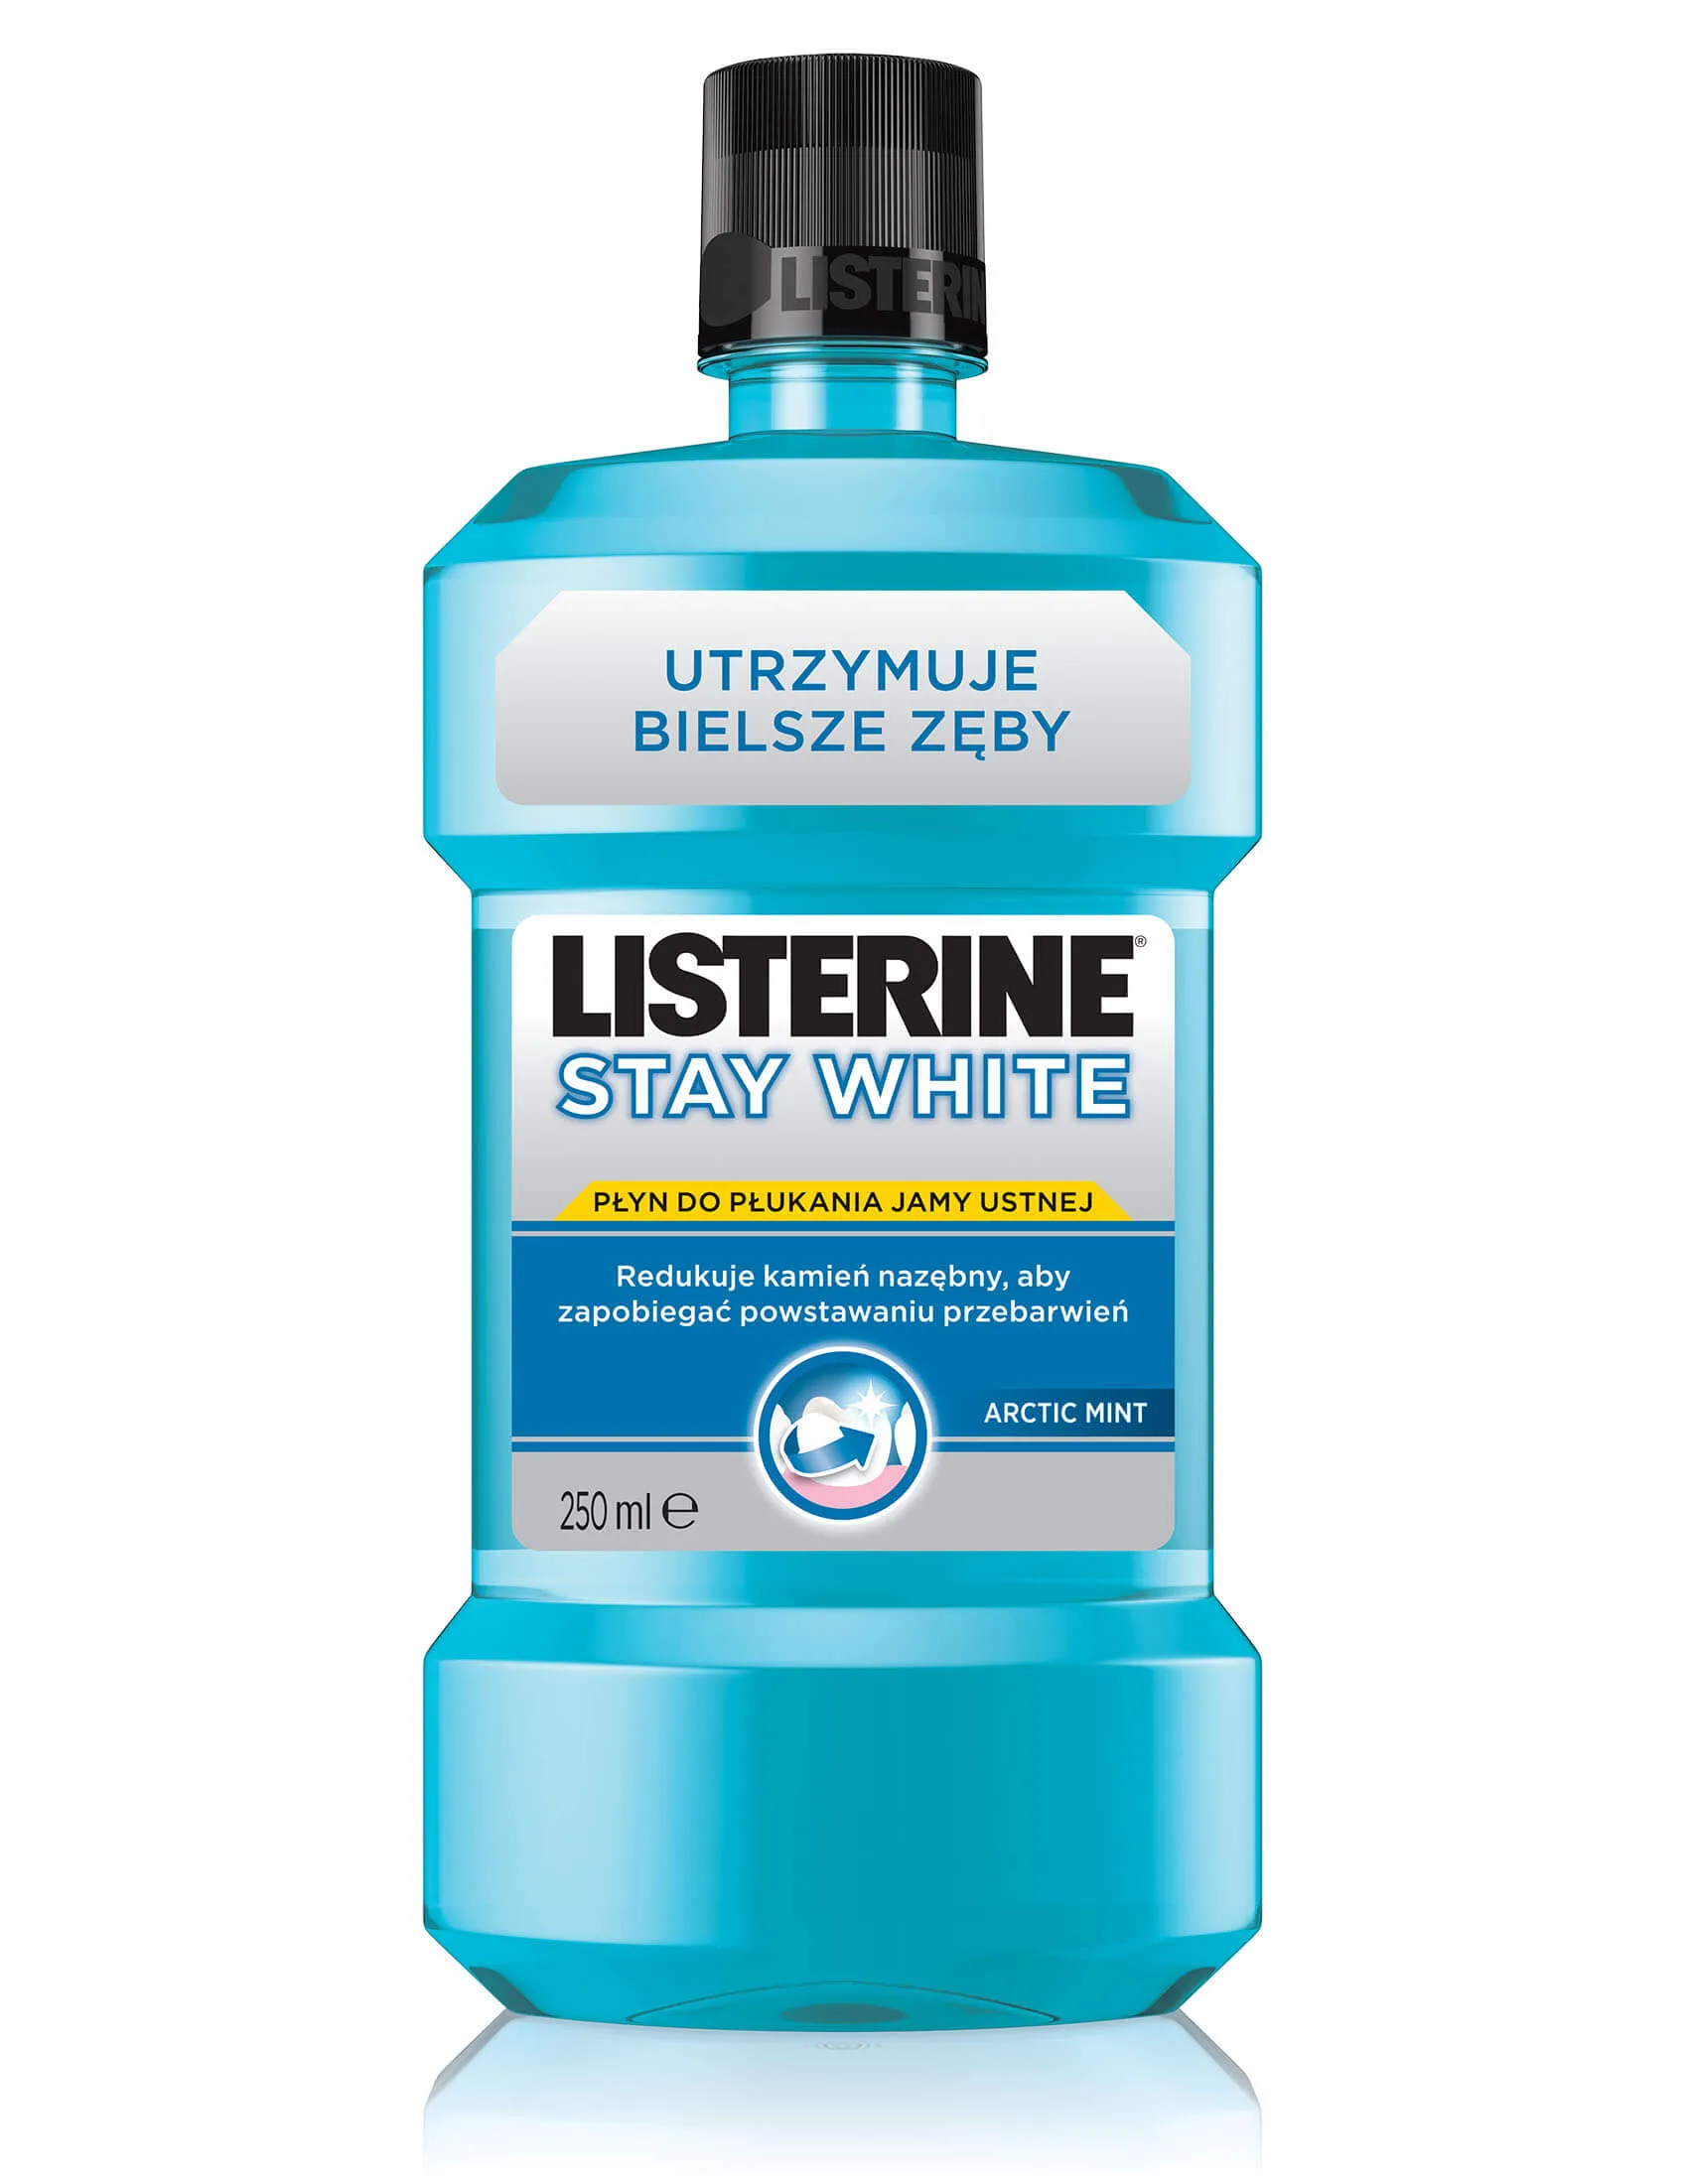 Listerine Stay White Arctic Mint, płyn do płukania jamy ustnej, 250ml